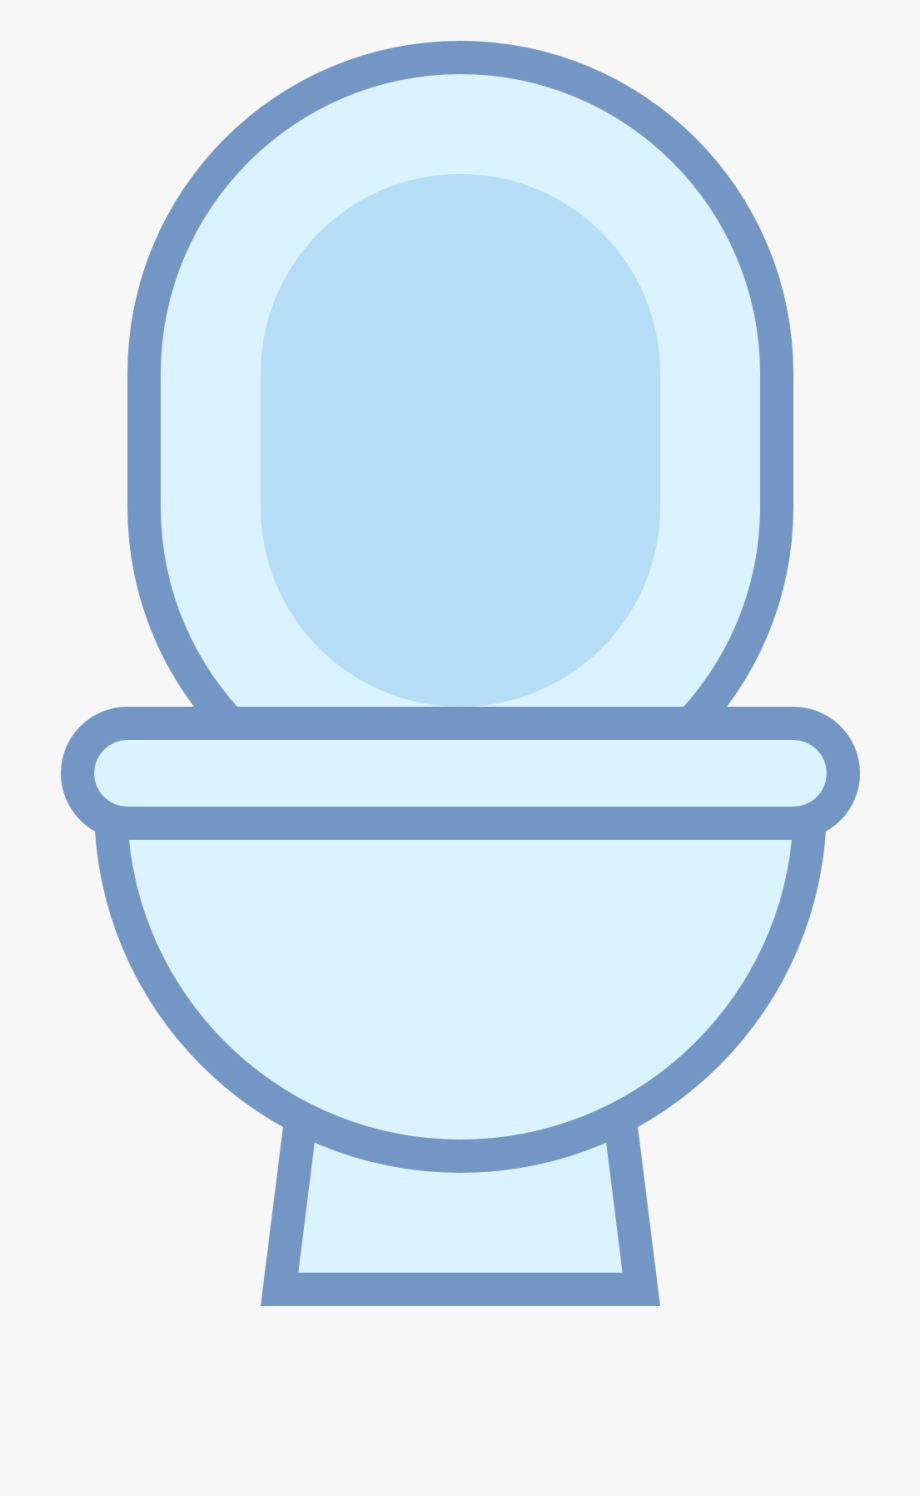 Toilet bowl icon.